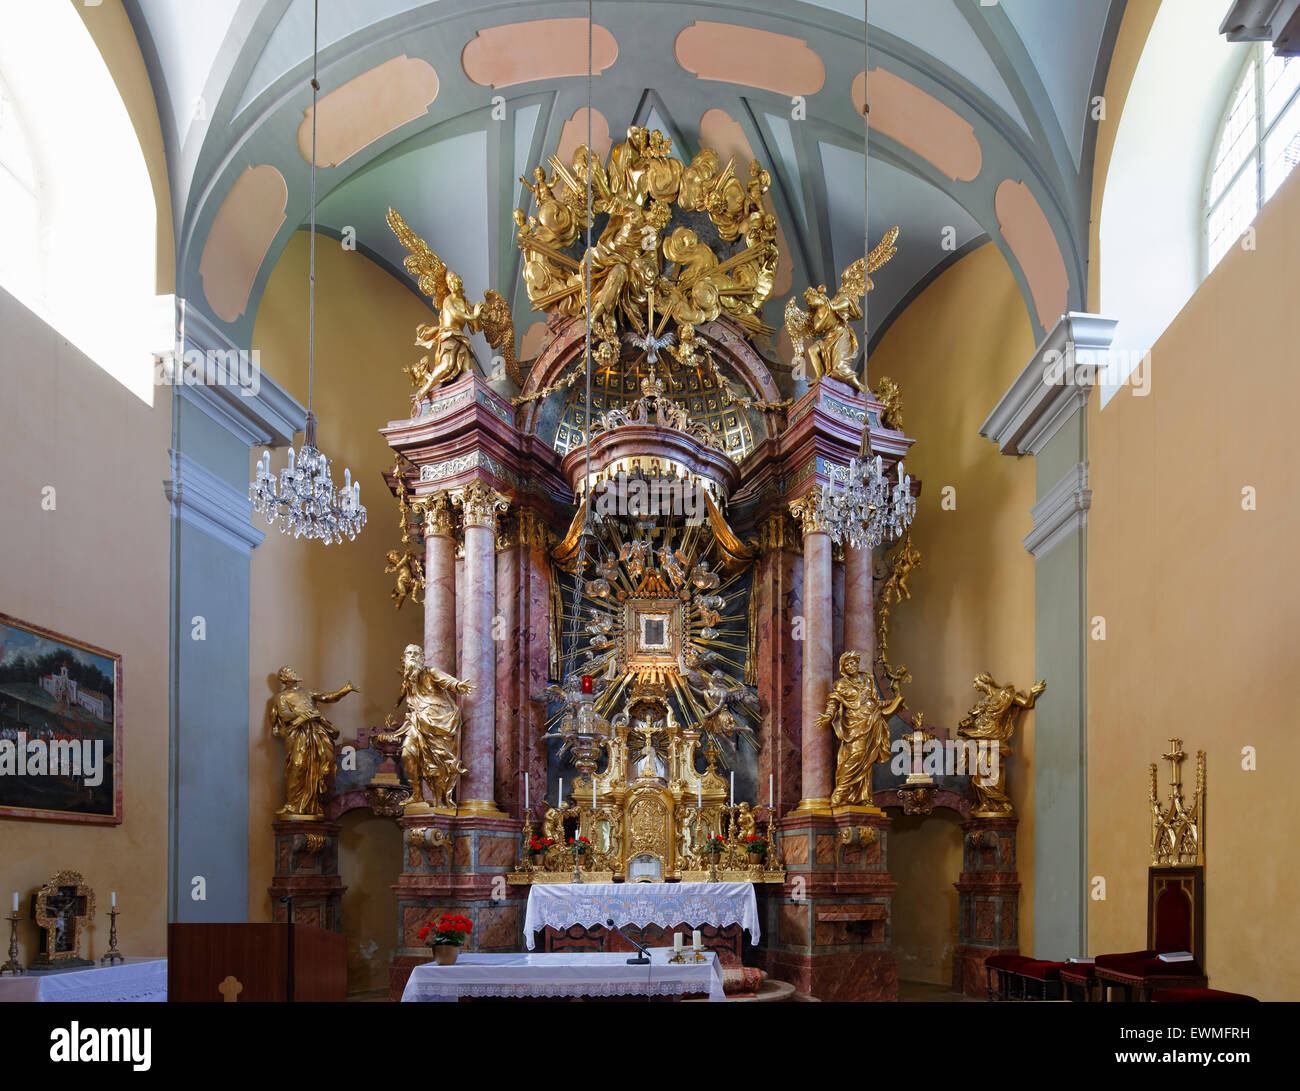 High altar, Mariahilfberg pilgrimage church, Gutenstein, industrial district, Lower Austria, Austria Stock Photo